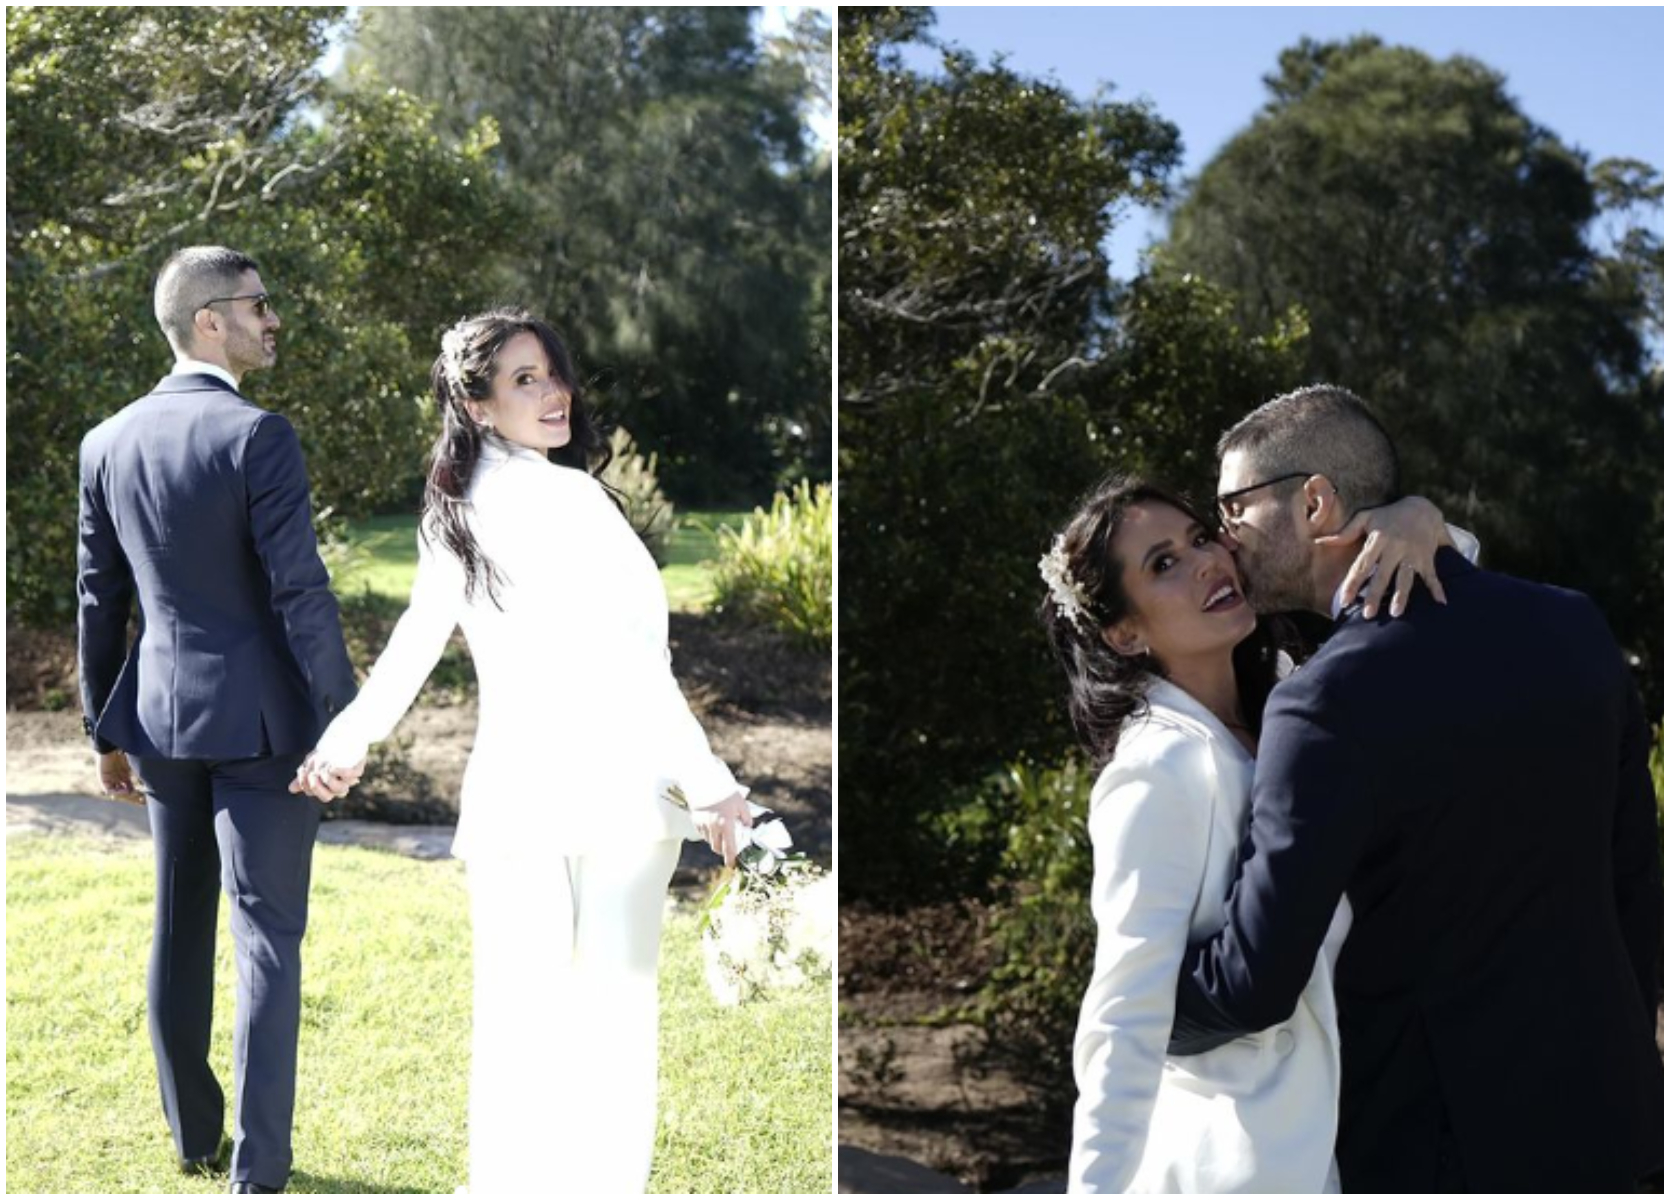 Dos fotografías del matrimonio de ANgie Alvarado donde posa románticamente junto a su esposo